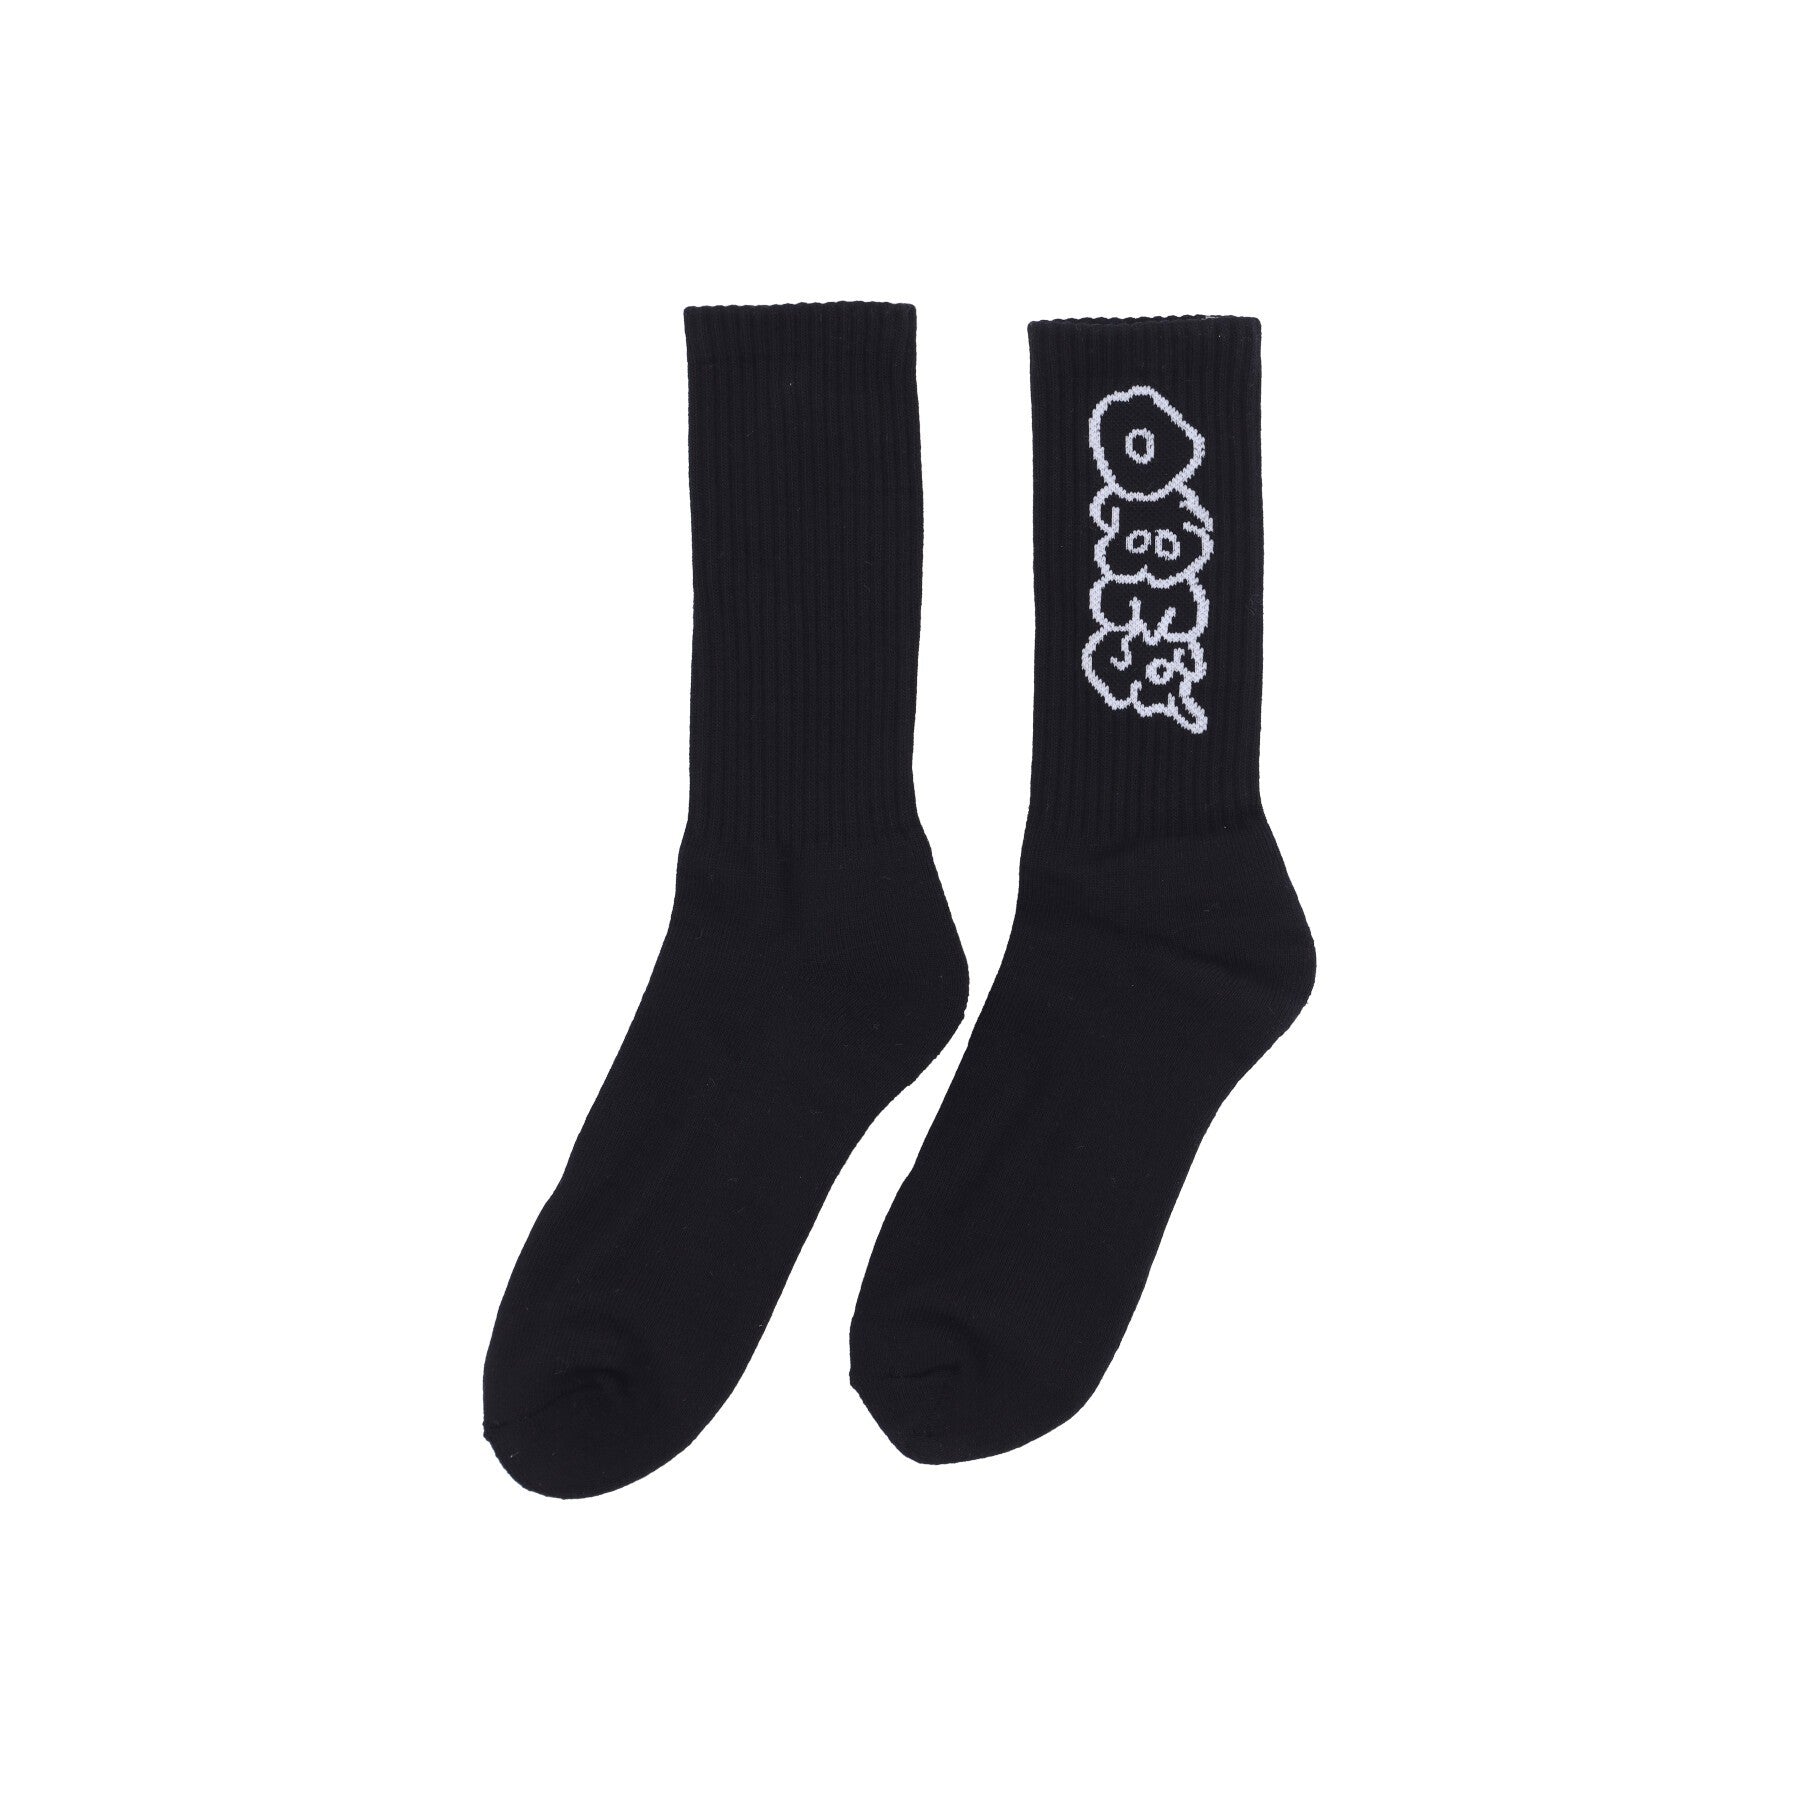 Obey, Calza Media Uomo Brux Socks, Black